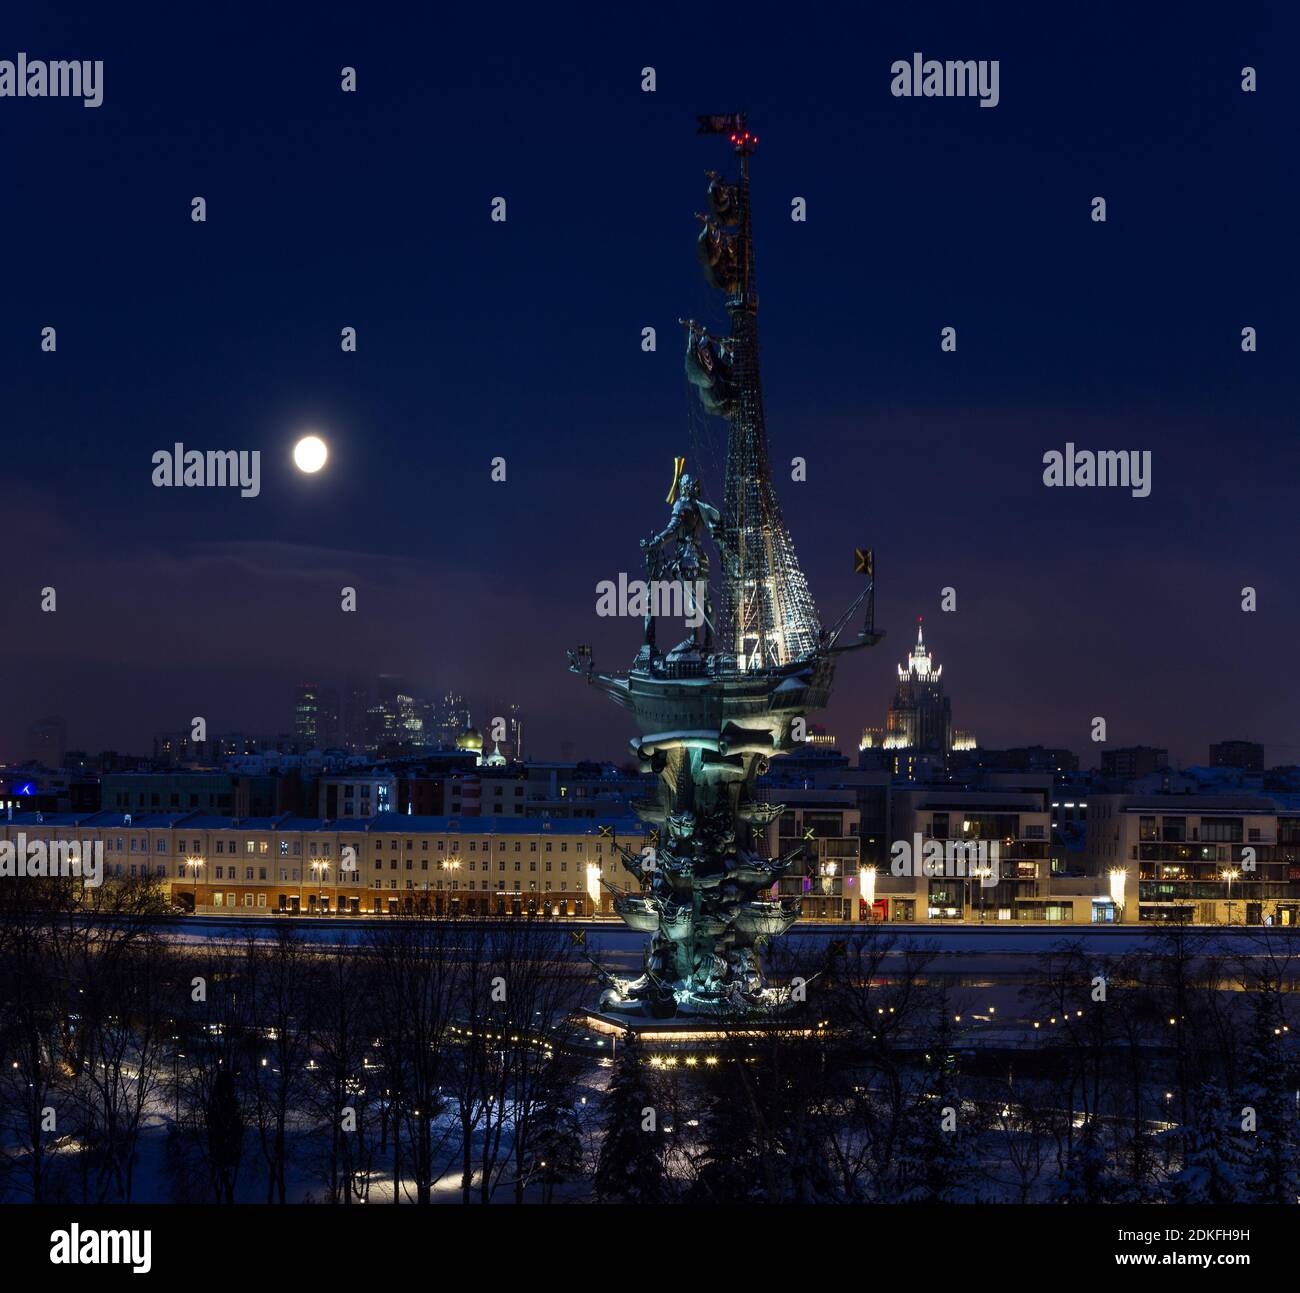 Mosca, Russia - 1 febbraio 2018: Panorama del centro di Mosca durante la notte invernale sotto la luna piena - International Business Center, Peter the Great St Foto Stock